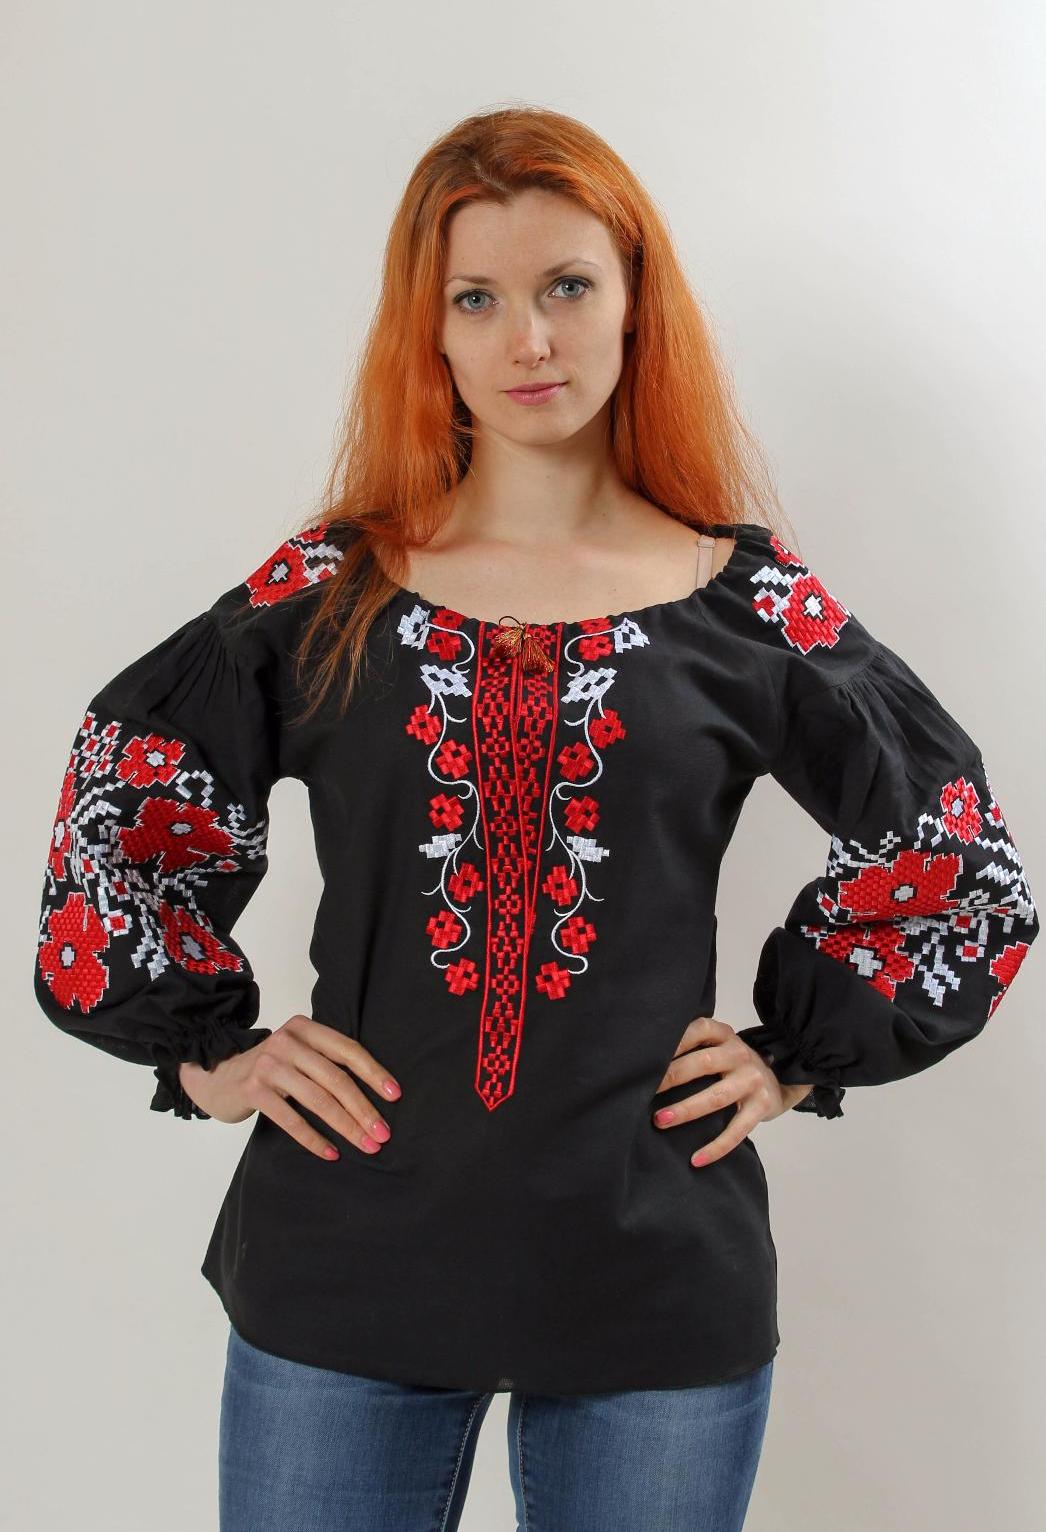 Женская одежда с украины